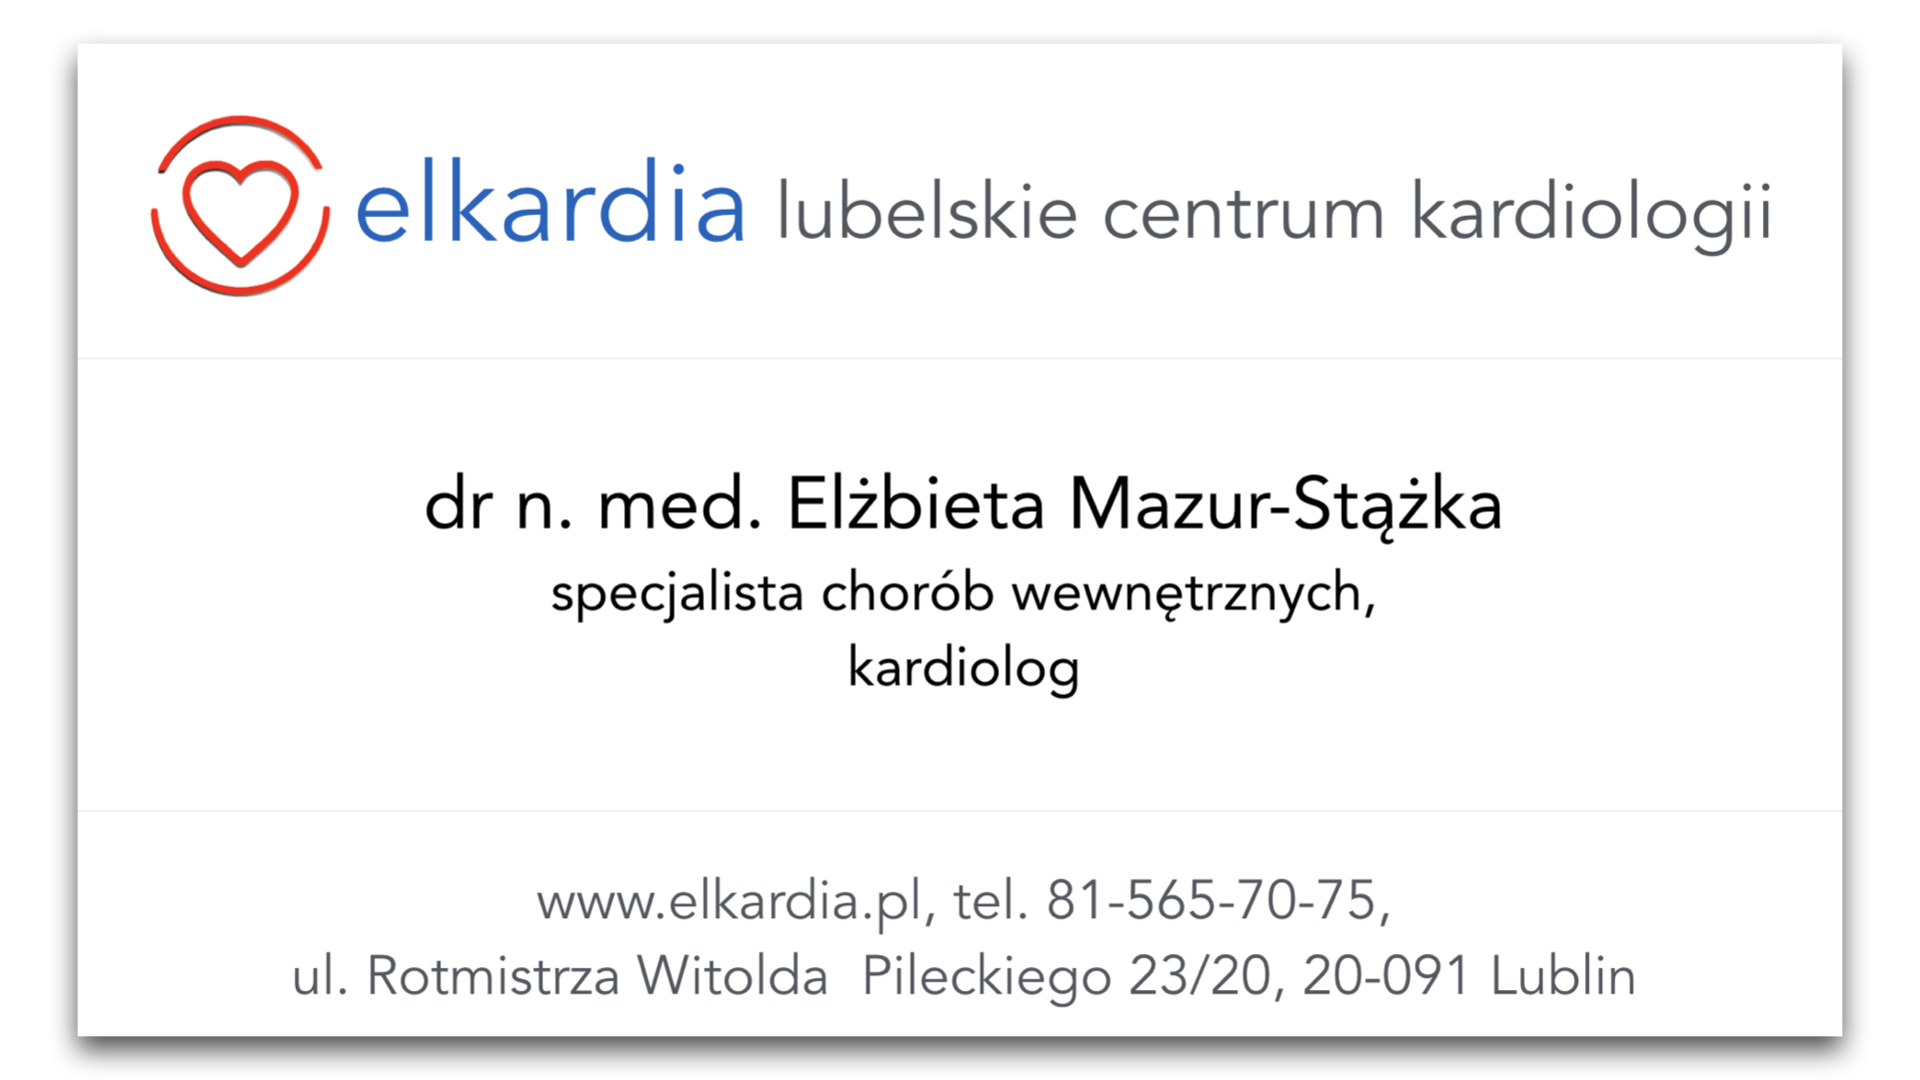 dr n. med. Elżbieta Mazur-Stążka, kardiolog, specj. chorób wewnętrznych